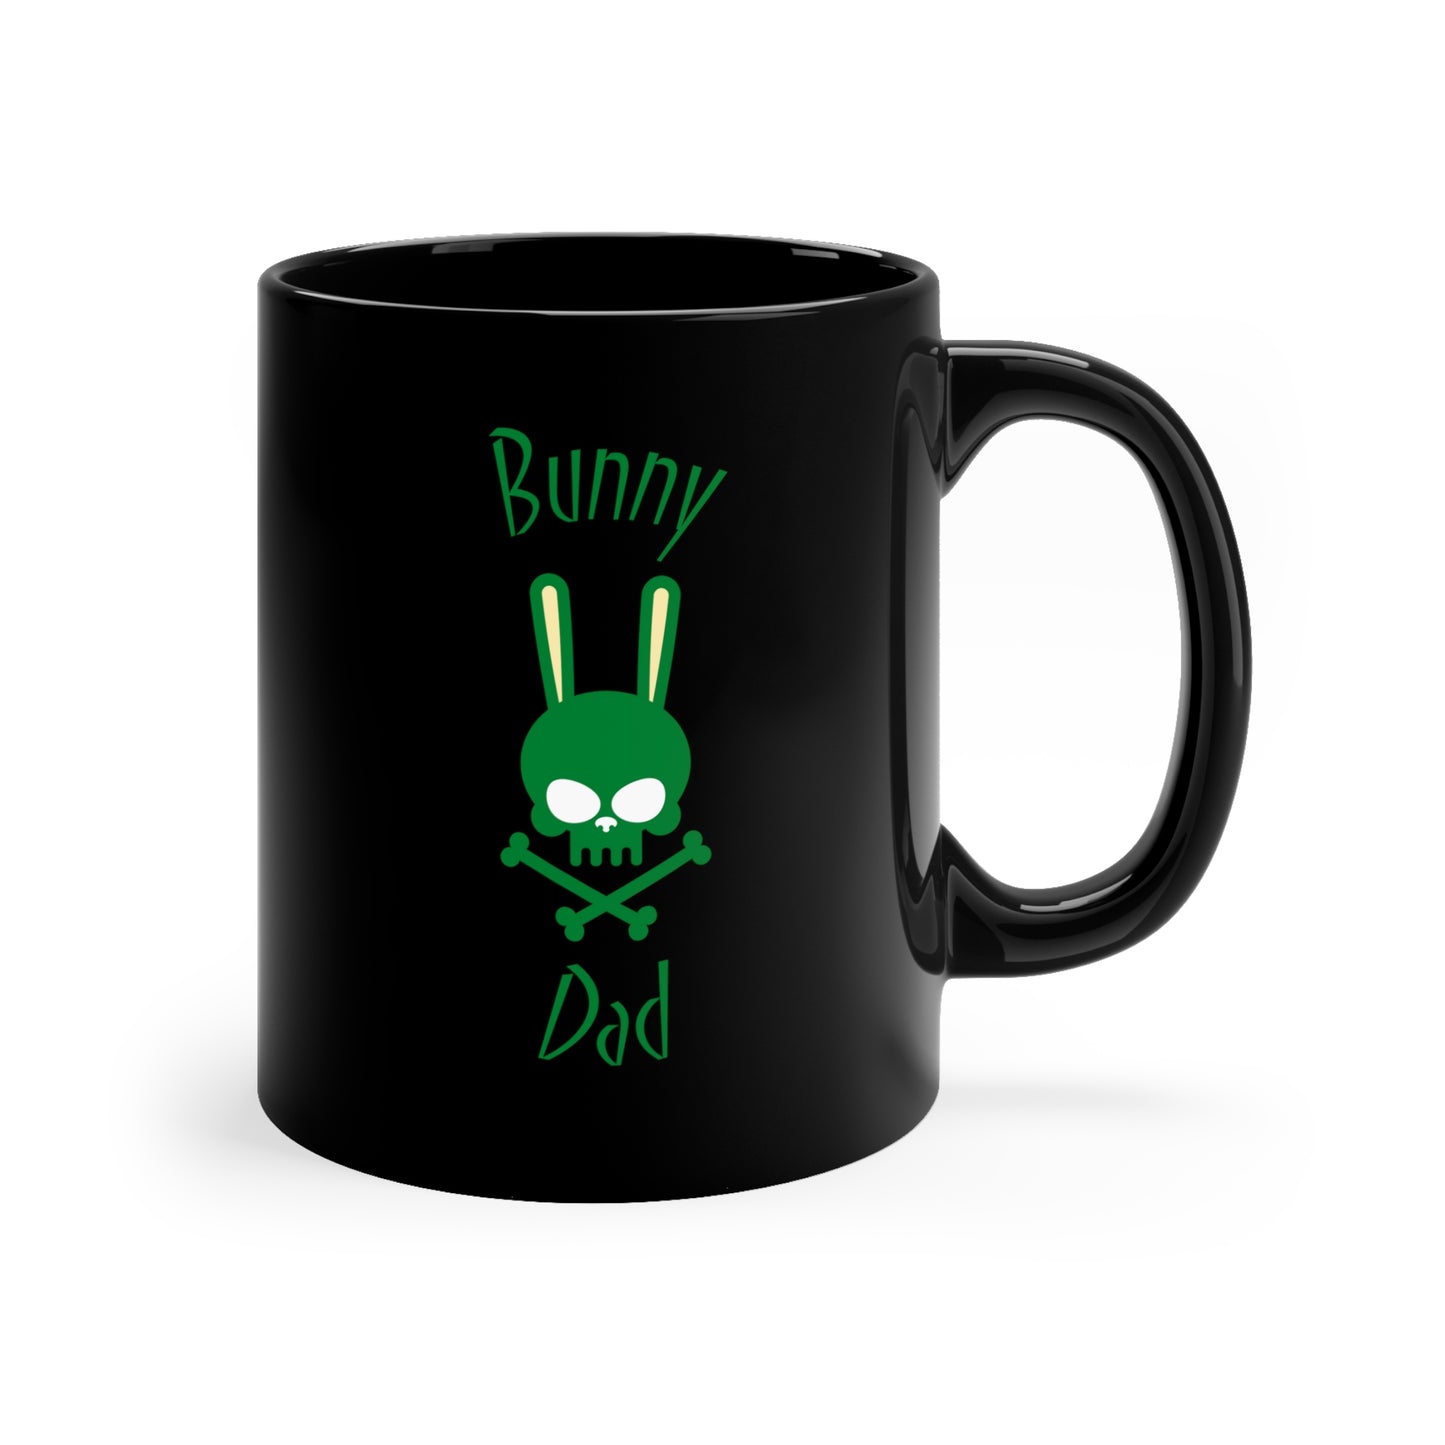 Bunny Dad Black Mug, 11oz